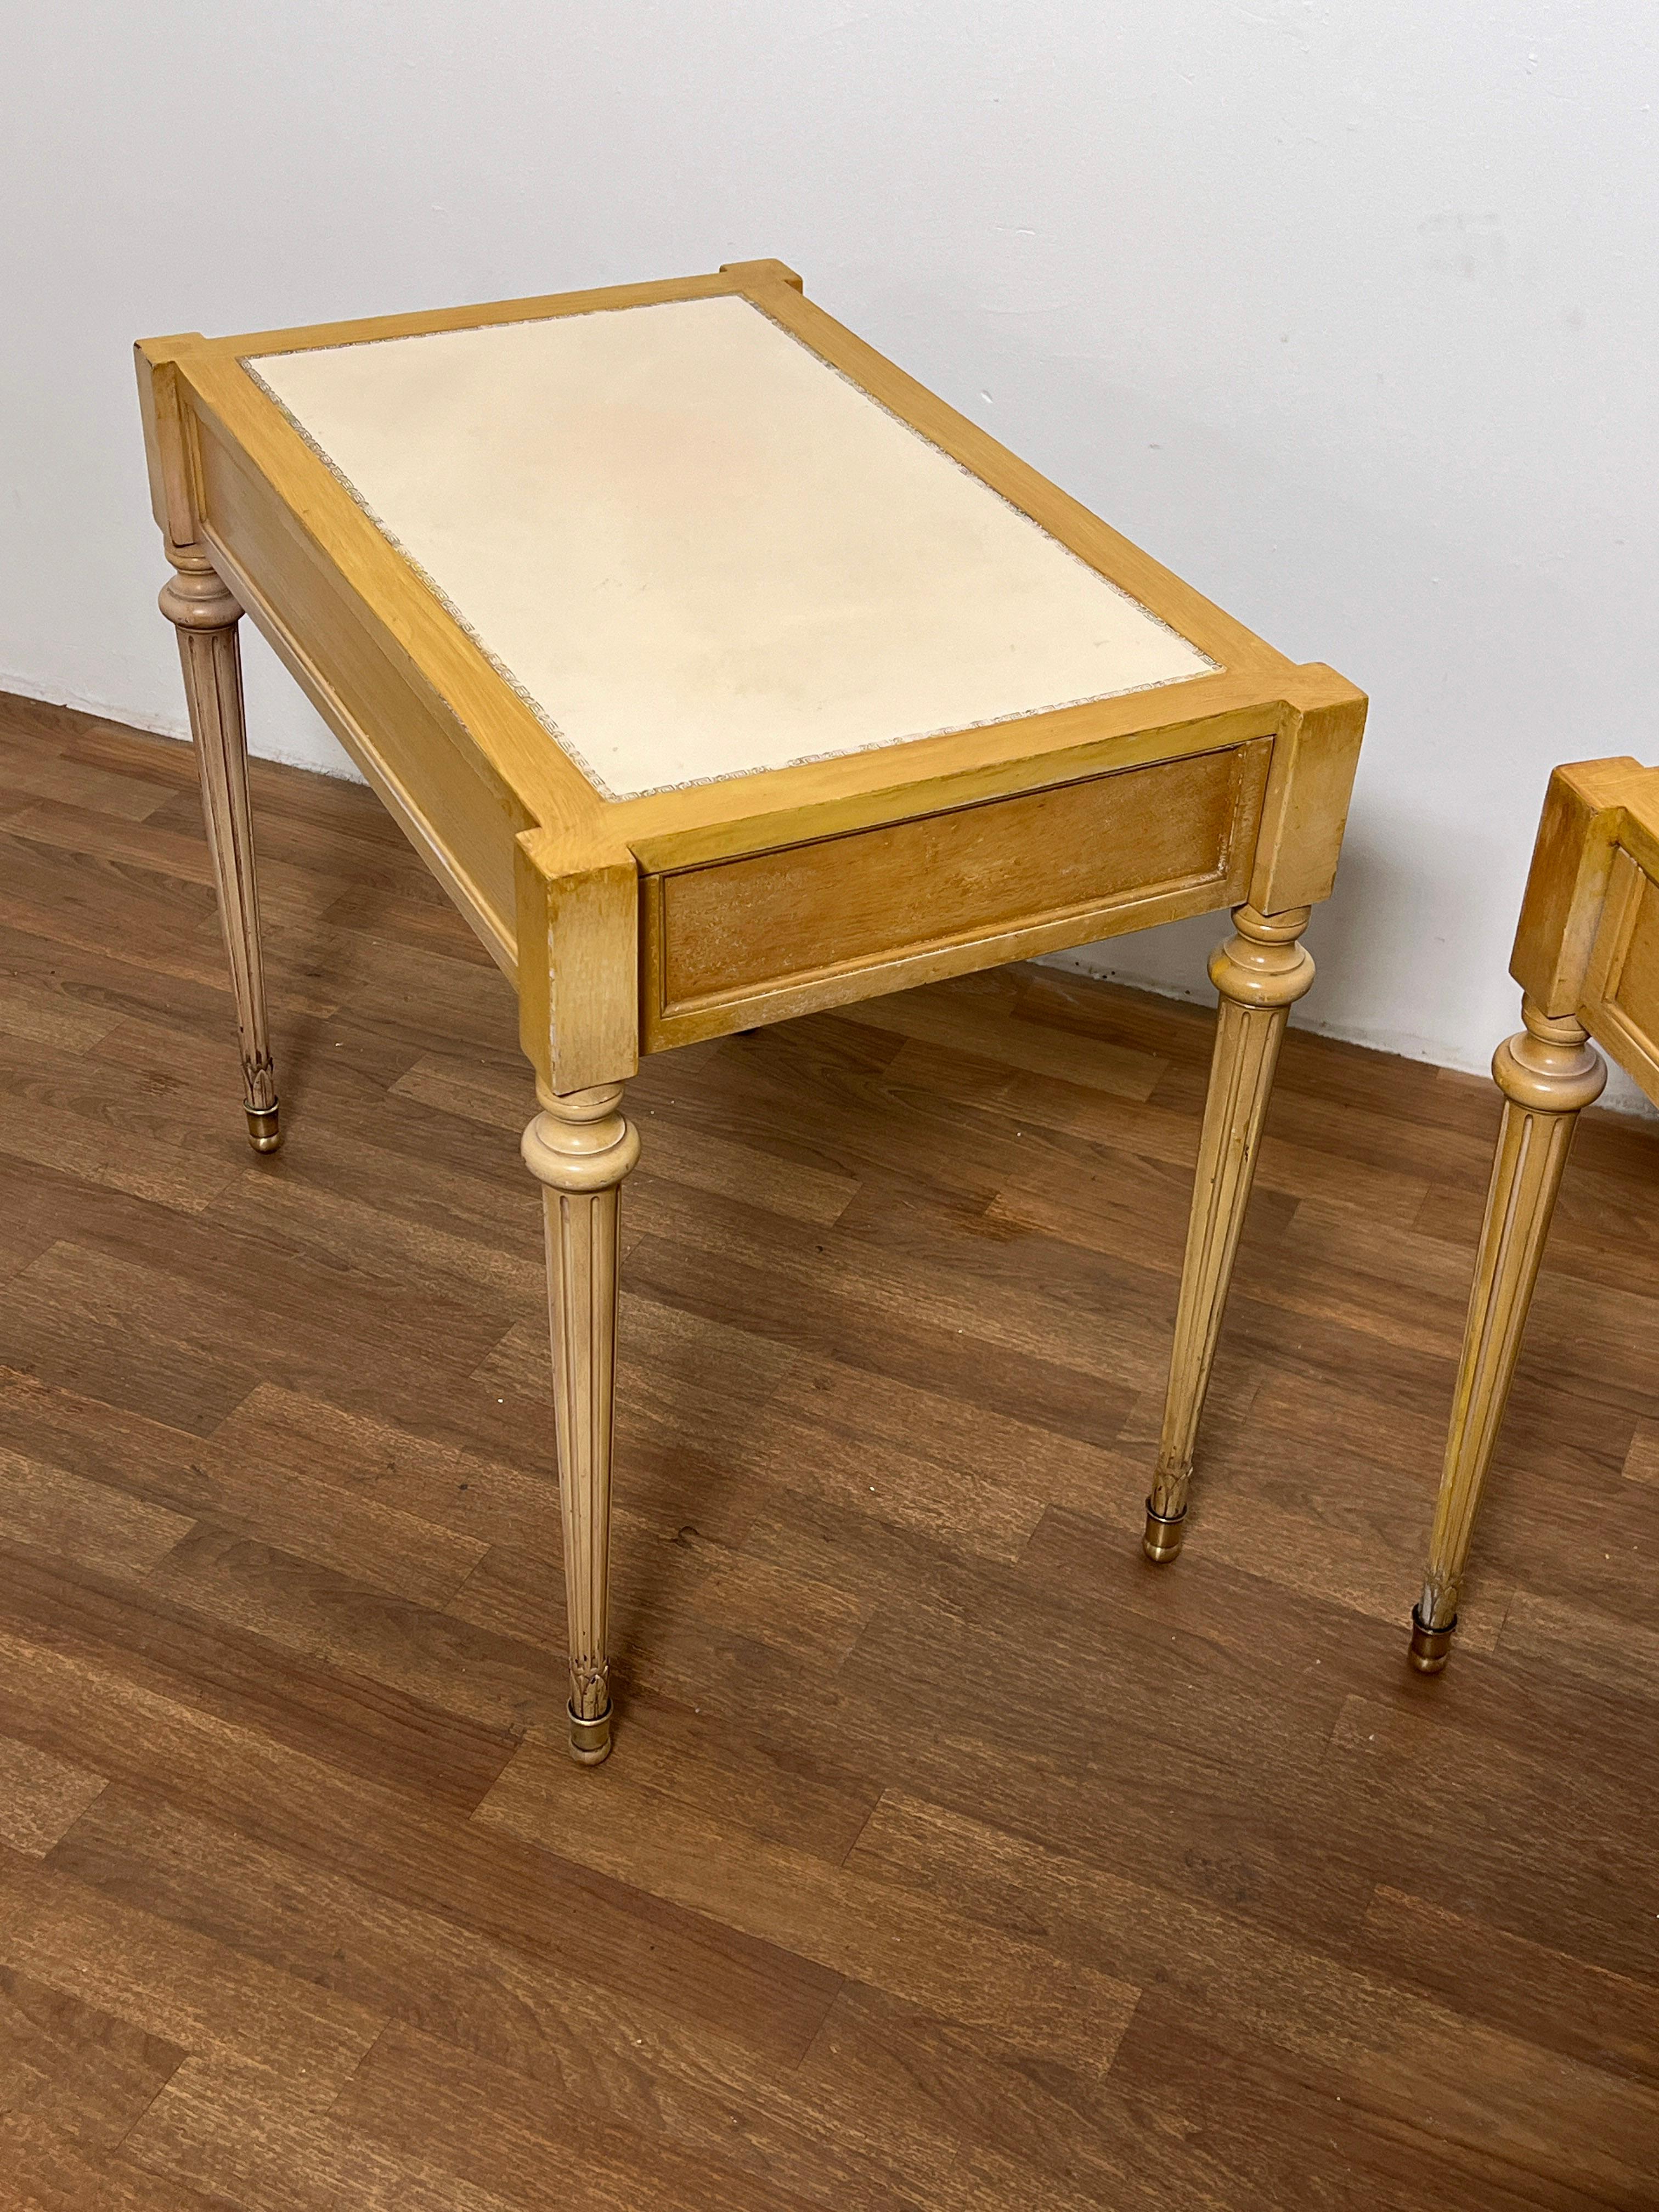 Paire de tables de lampe de style Louis XVI, chacune avec un seul tiroir et des dessus en cuir blanc, par Adolfo Genovese pour F & G Handmade Furniture de Cambridge, MA, vers les années 1950.